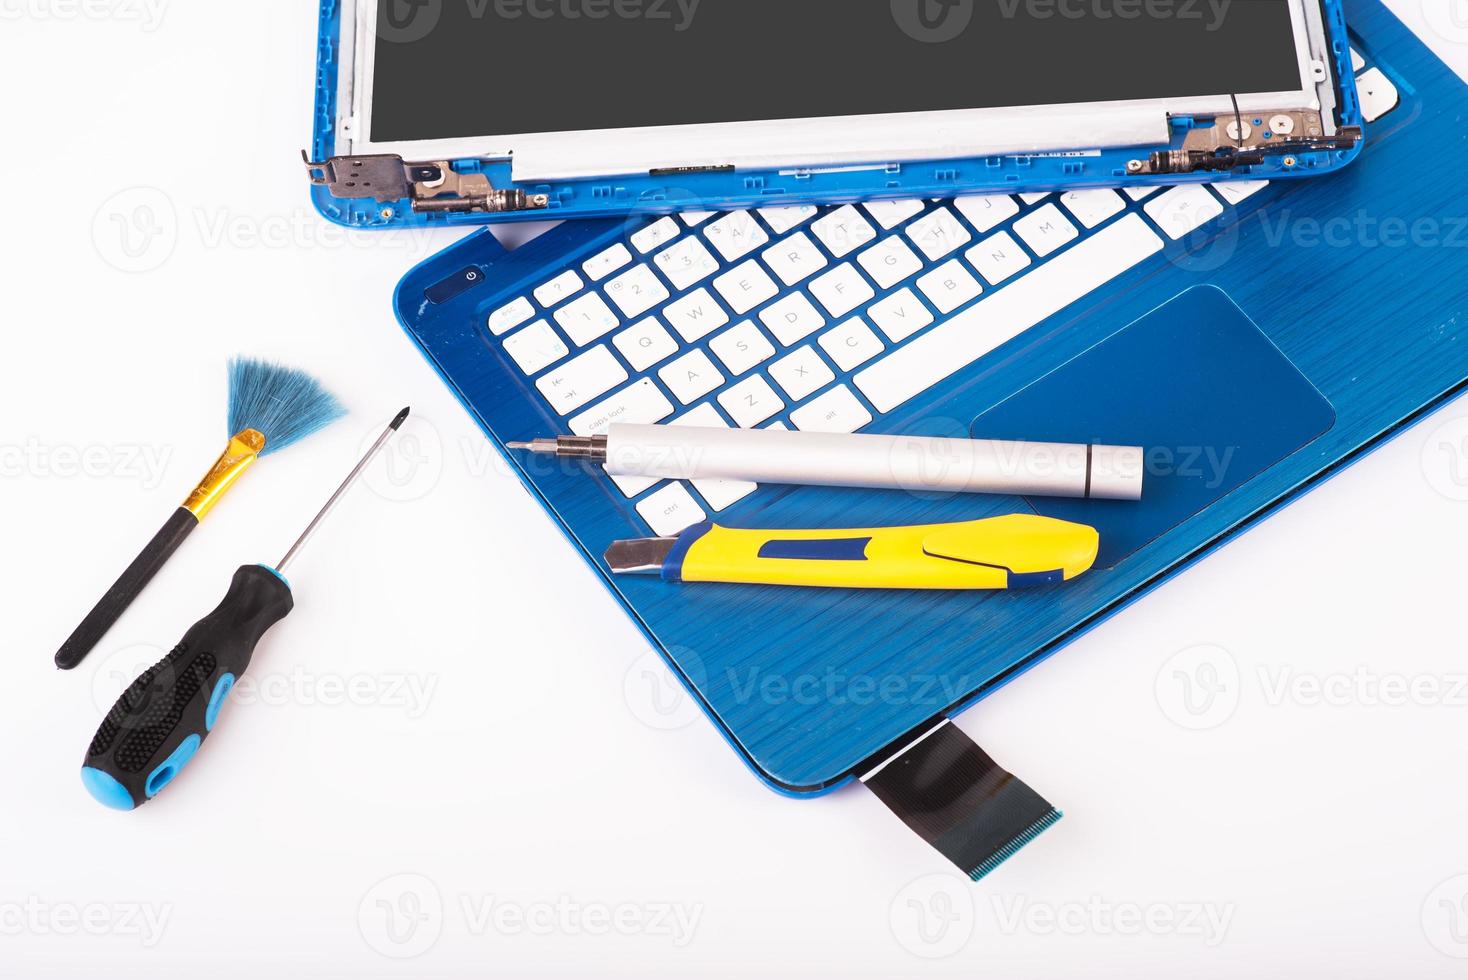 o engenheiro repara laptop azul, pc, computador e a tela. substituição da tela do notebook. instala a CPU do equipamento foto